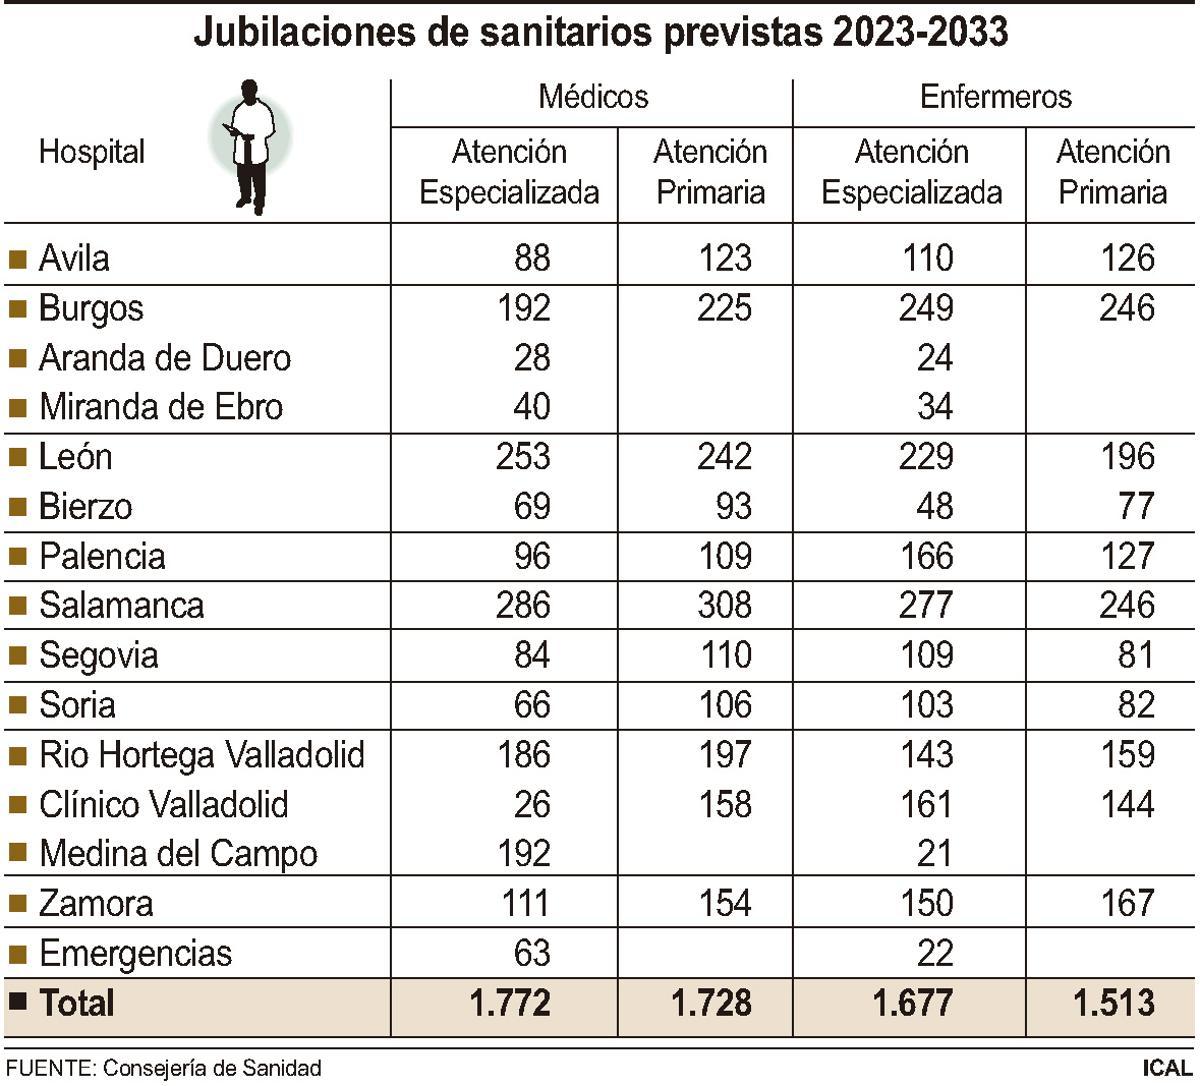 Jubilaciones de sanitarios previstas 2023-2033